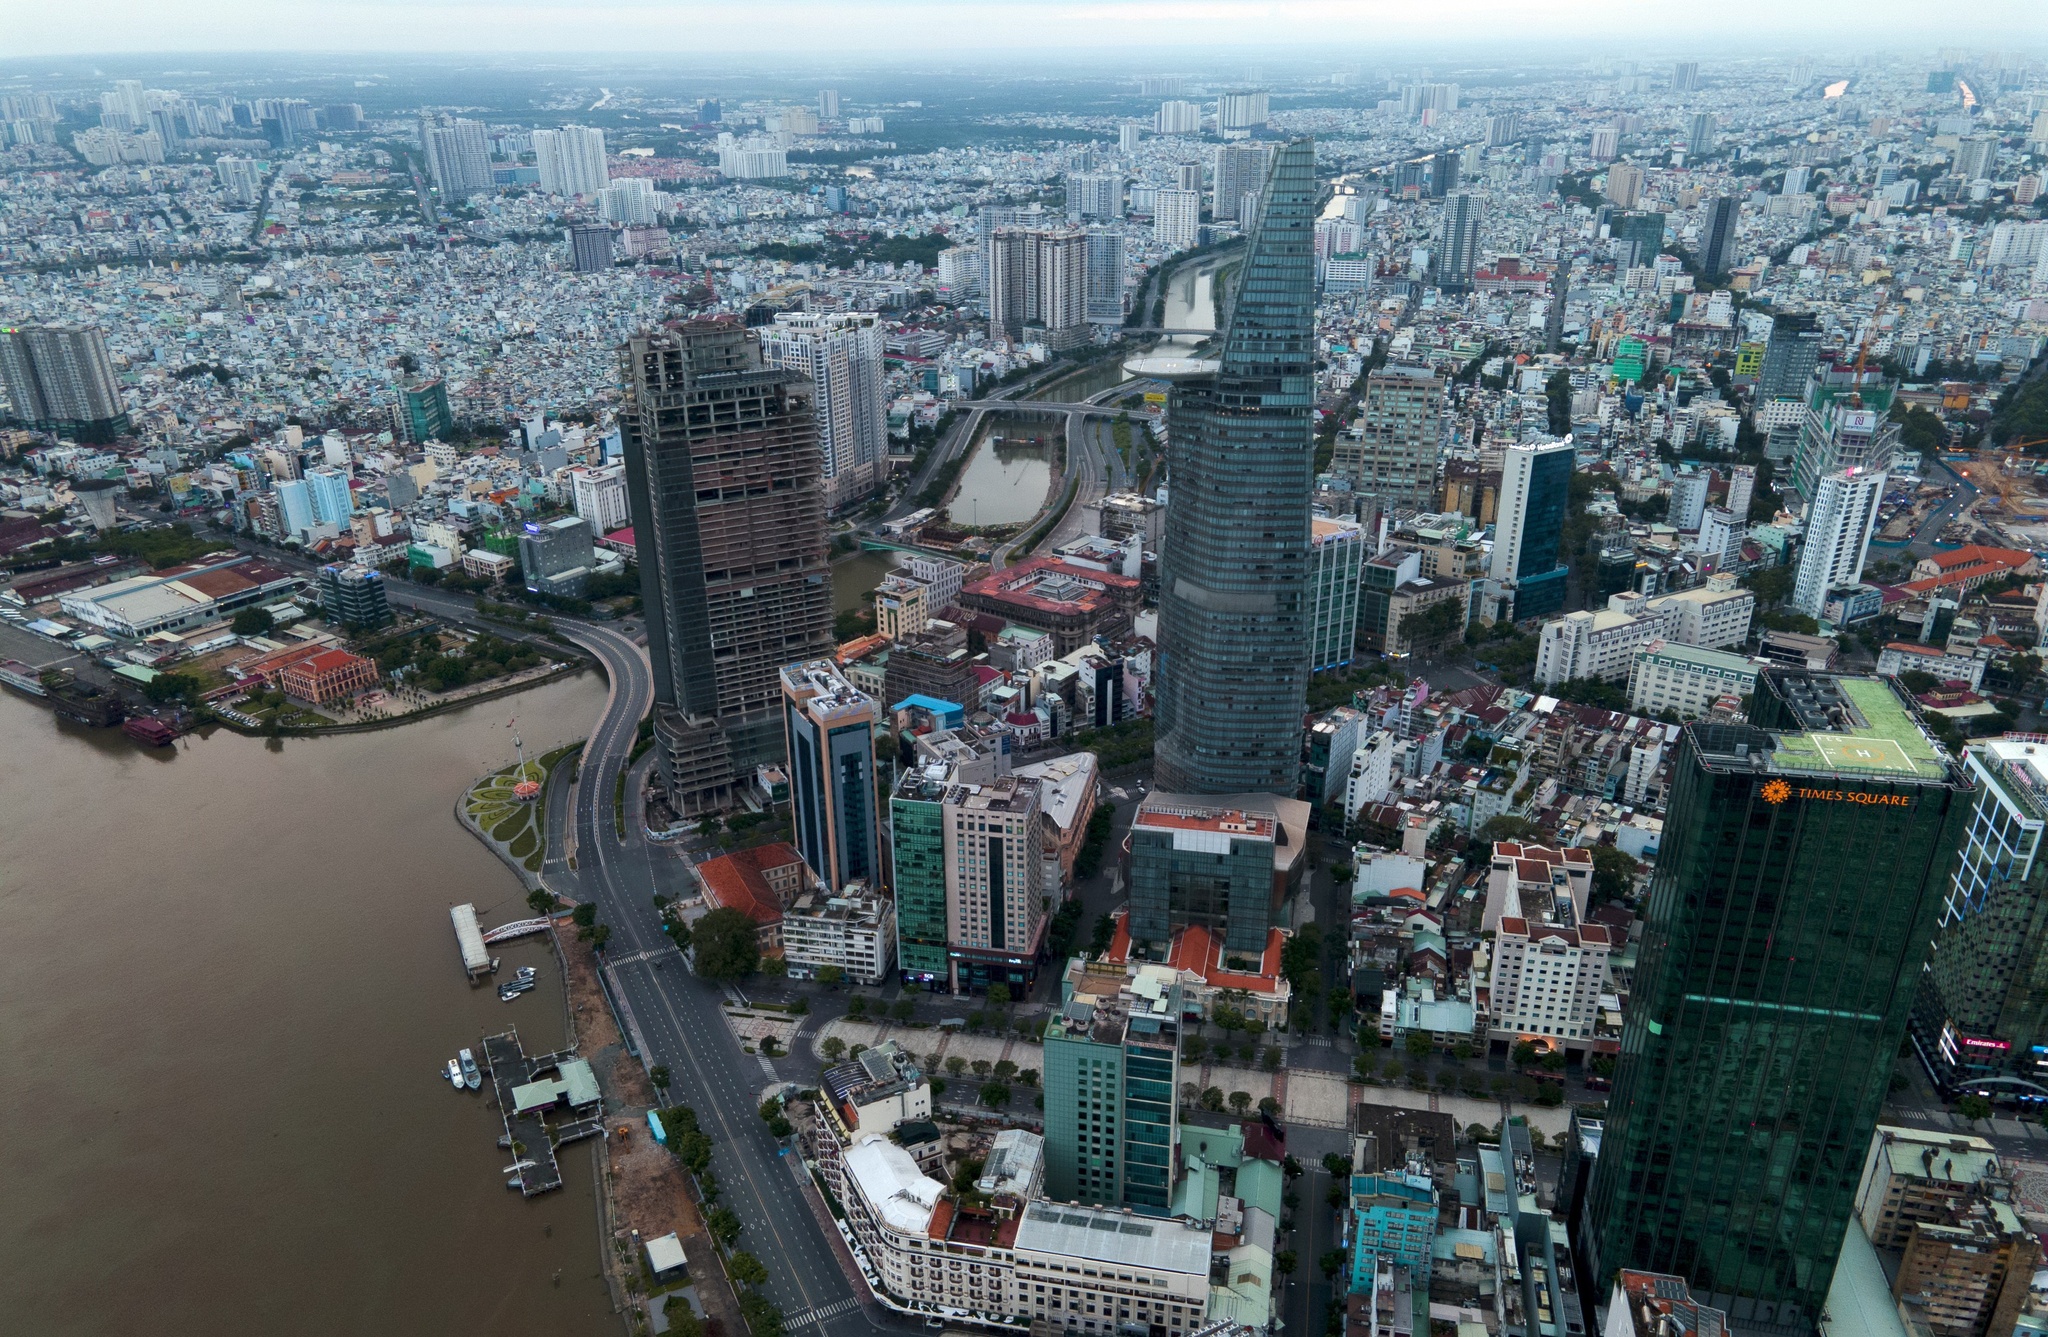 TPHCM - Thành phố Hồ Chí Minh là trung tâm kinh tế, văn hóa của Việt Nam. Chiều dài náo nhiệt của phố phường trong thành phố và mọi hoạt động sôi động tại đây đều thật hấp dẫn. Hãy cùng lắng nghe câu chuyện về TPHCM qua hình ảnh đầy màu sắc.